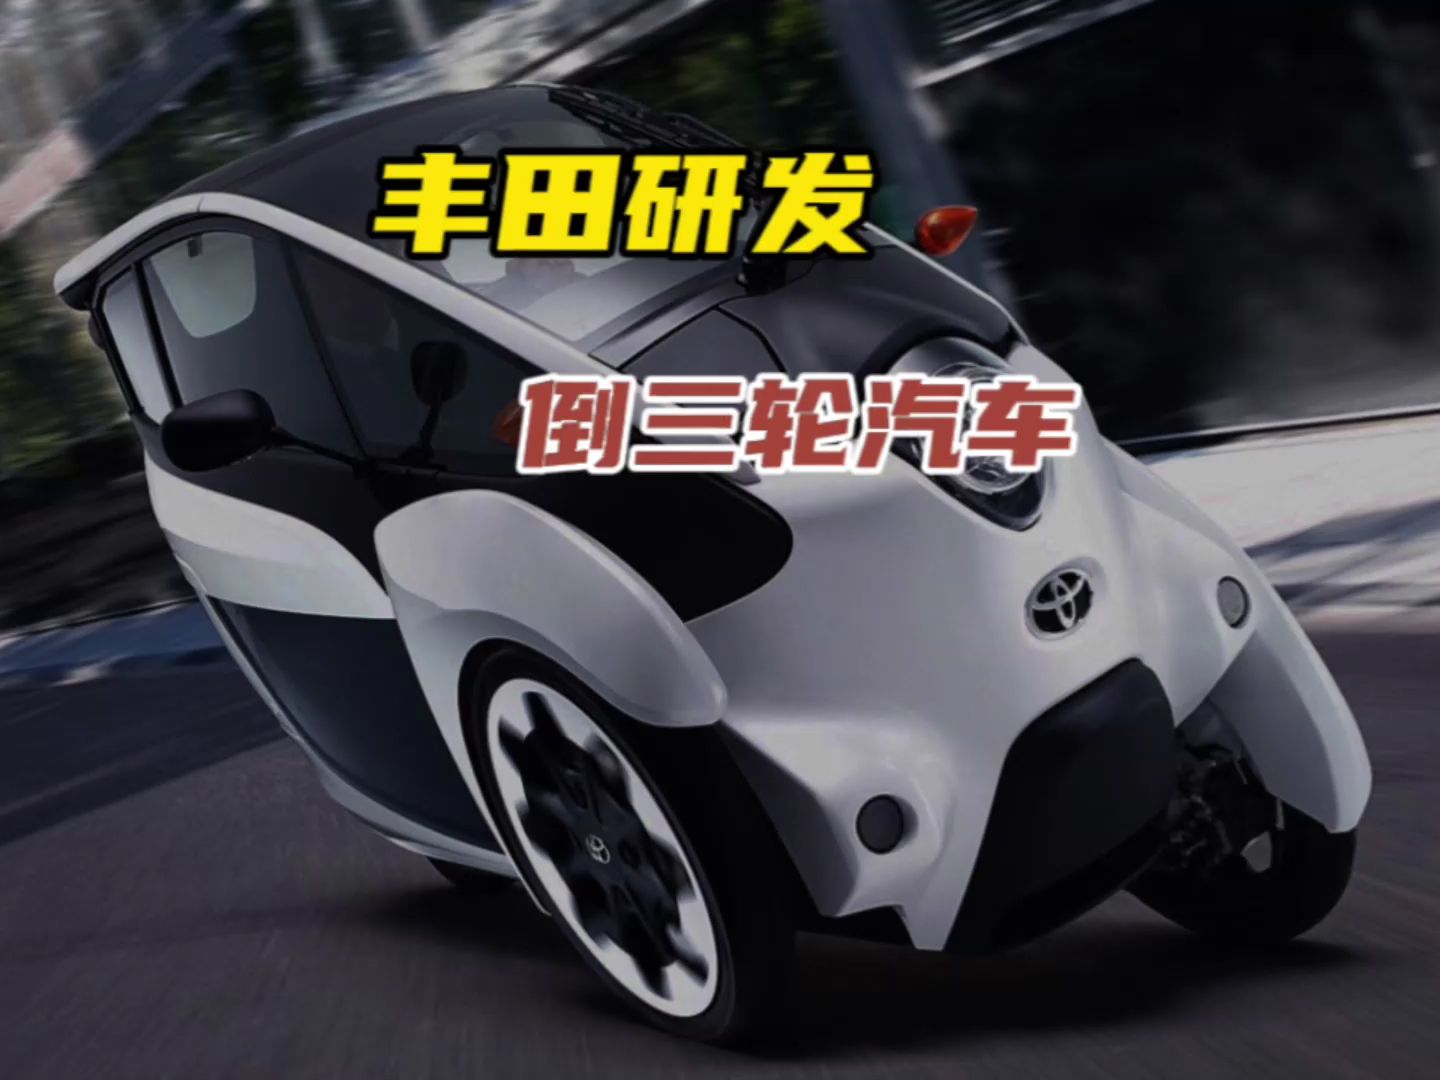 丰田汽车将公布针对大发汽车的整改措施